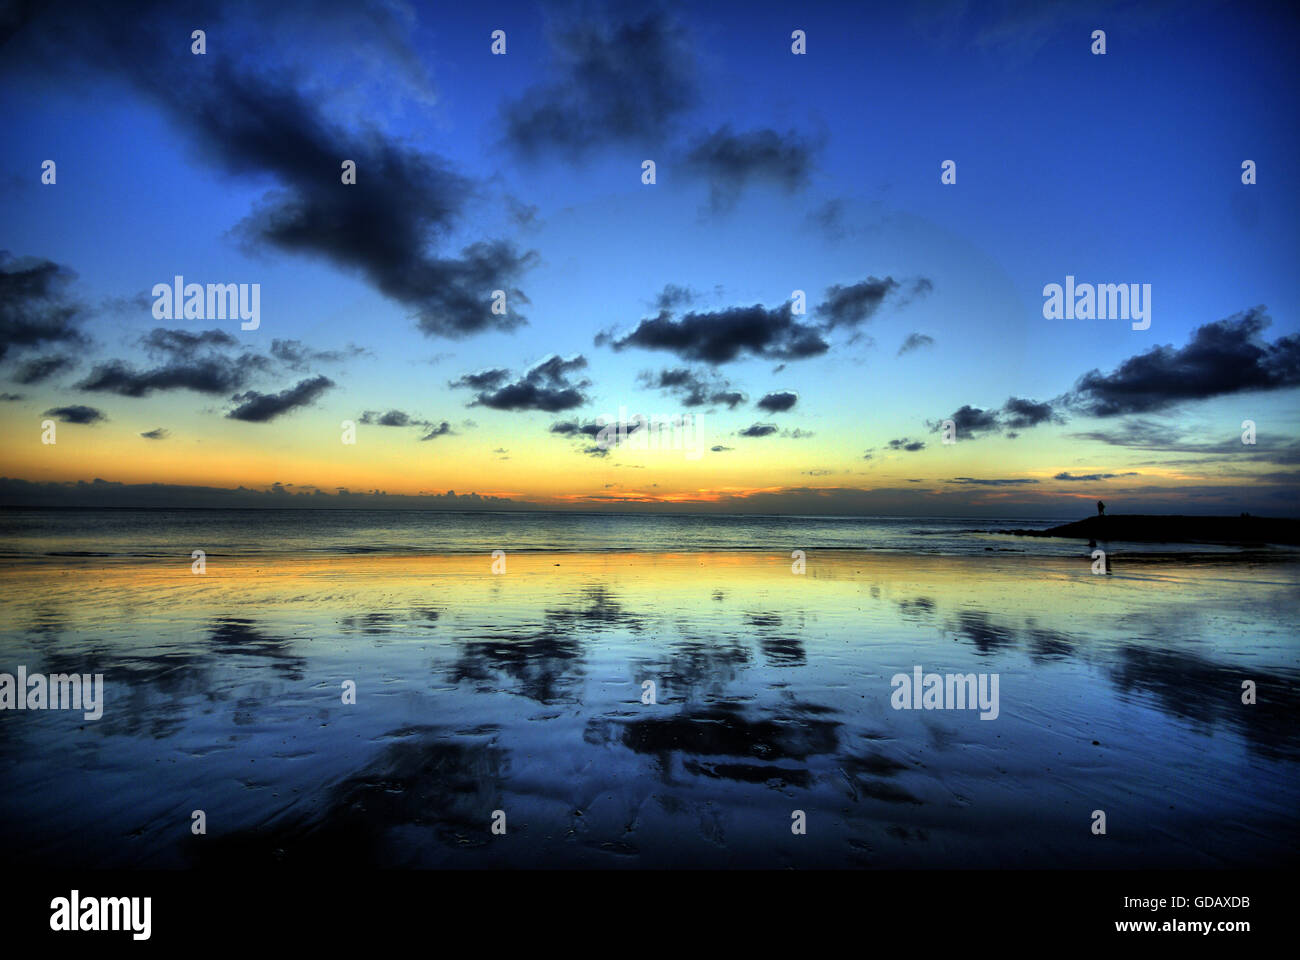 Le coucher du soleil,réflexion,Kuta, Kuta Beach, plage,mer,Bali,Indonesie,cercle chromatique bleu,jaune,nuages,harmonie,drama, Banque D'Images